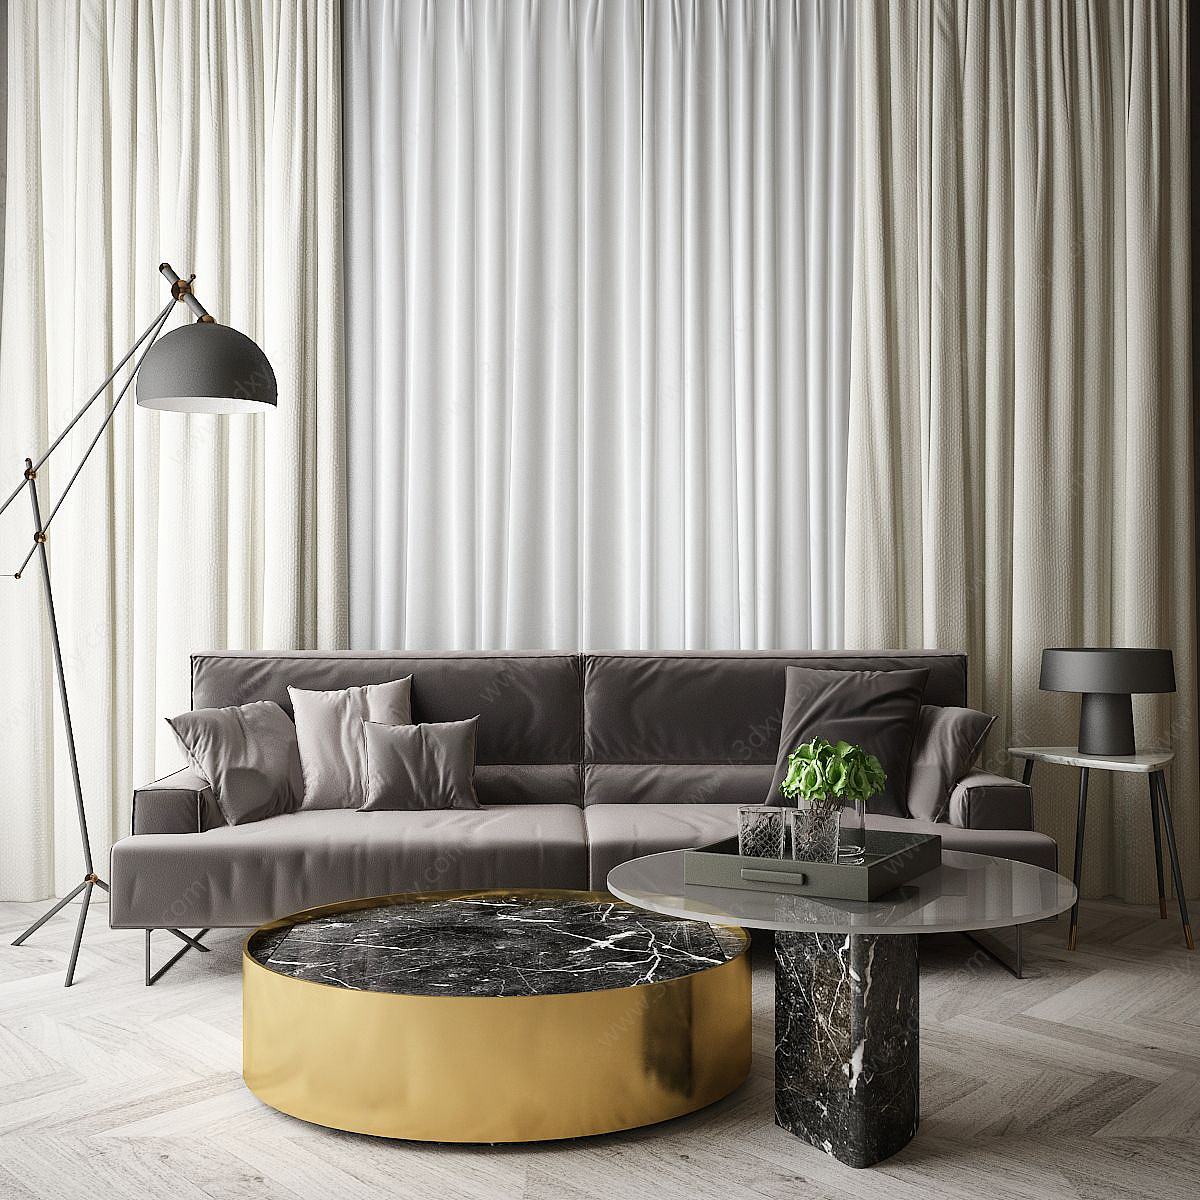 现代家居组合休闲沙发3D模型